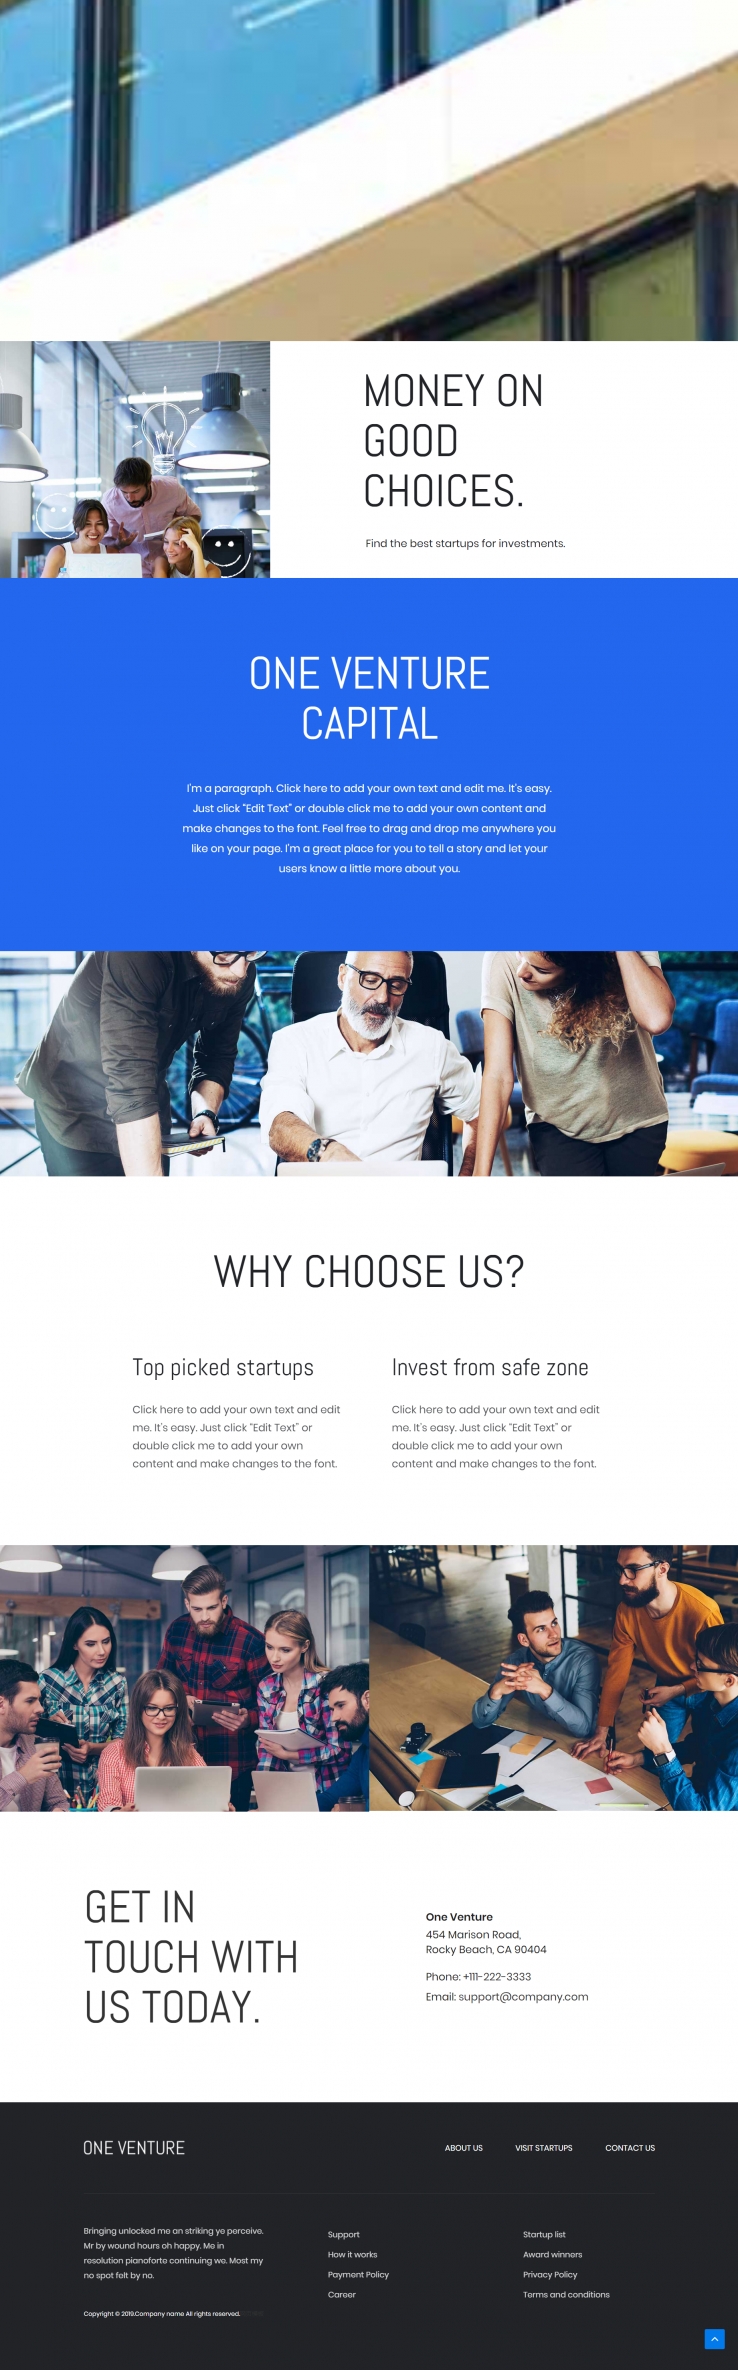 蓝色简洁风格响应式投资公司网页模板